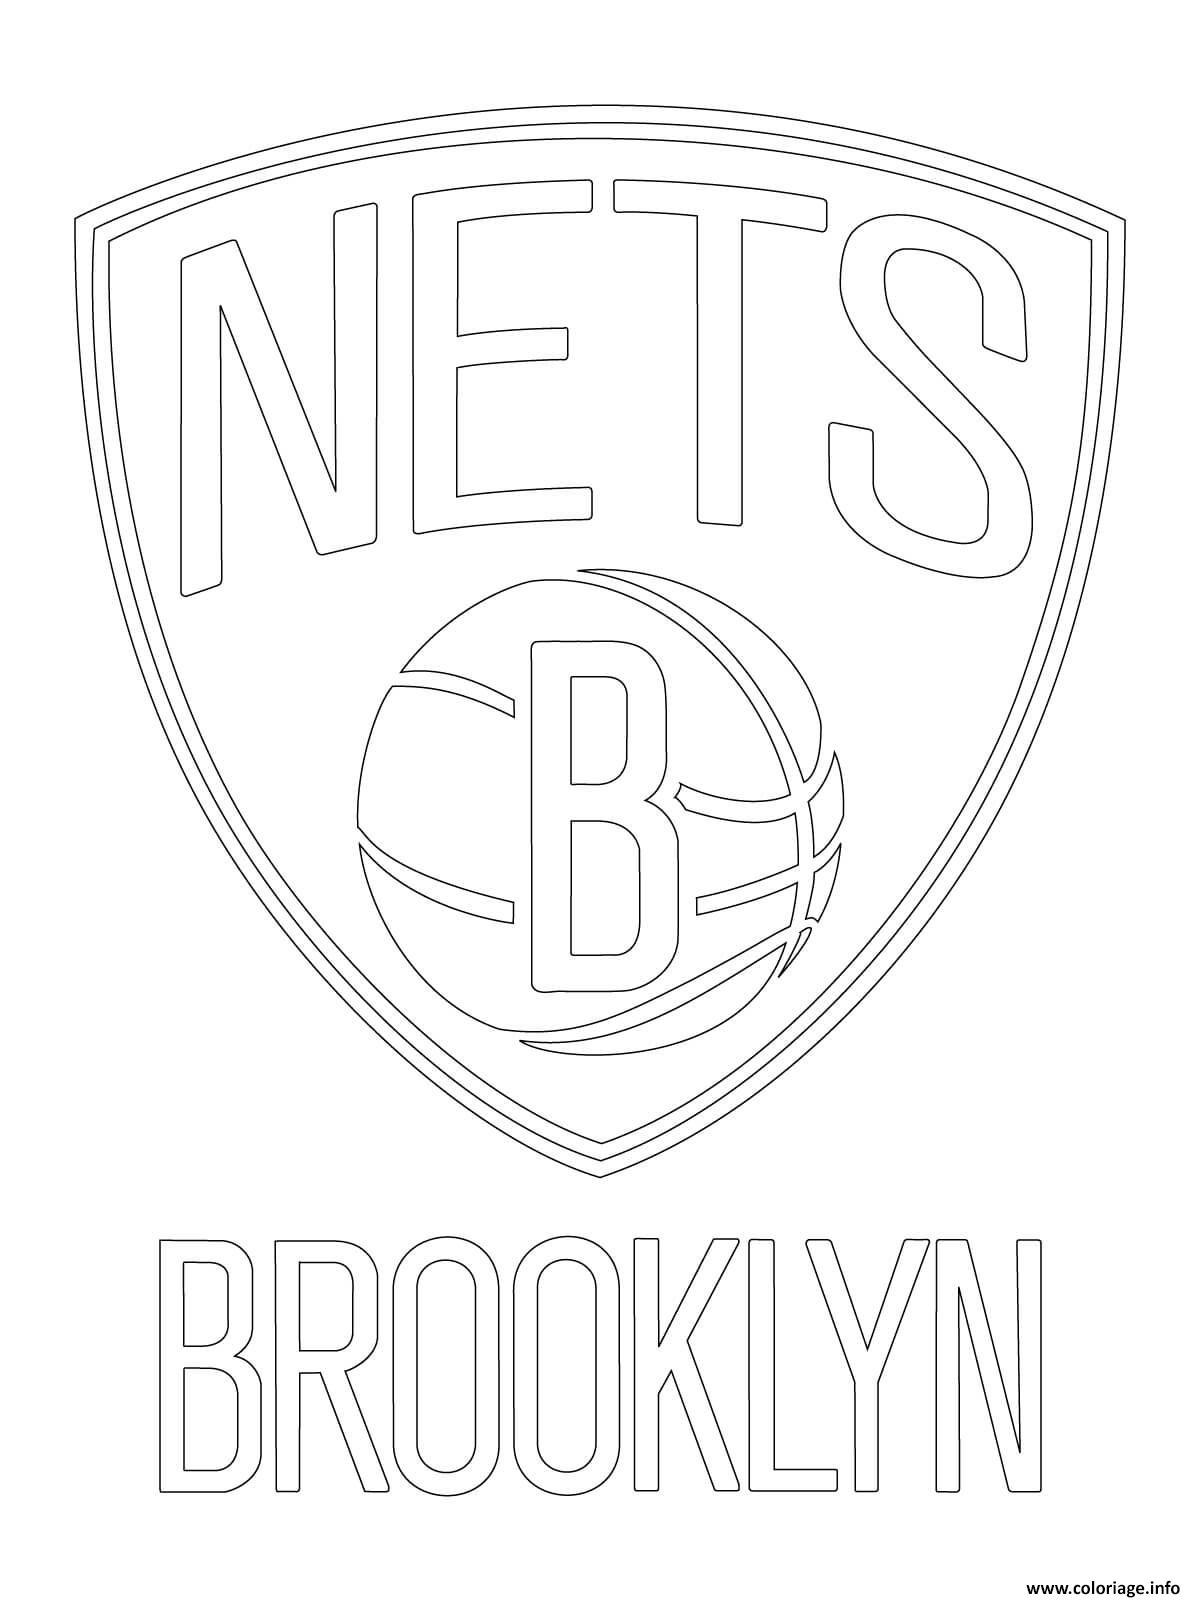 Dessin brooklyn nets logo nba sport Coloriage Gratuit à Imprimer